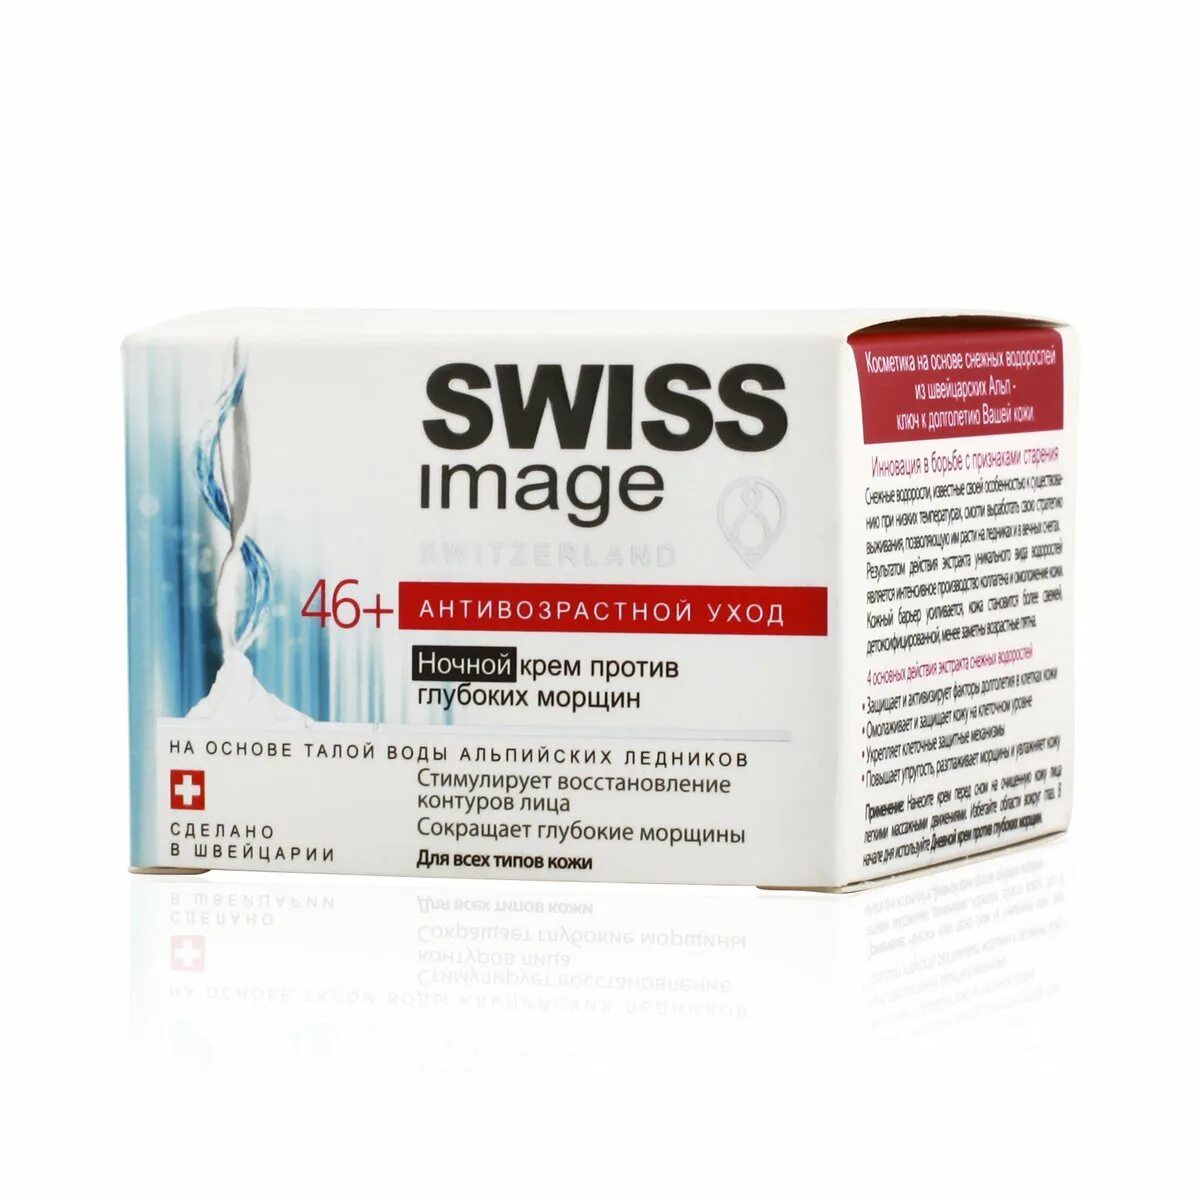 Swiss image 26 дневной крем. Крем Swiss image против морщин 26 +. Крем Swiss image ночной 46+. Swiss image 26 ночной крем.